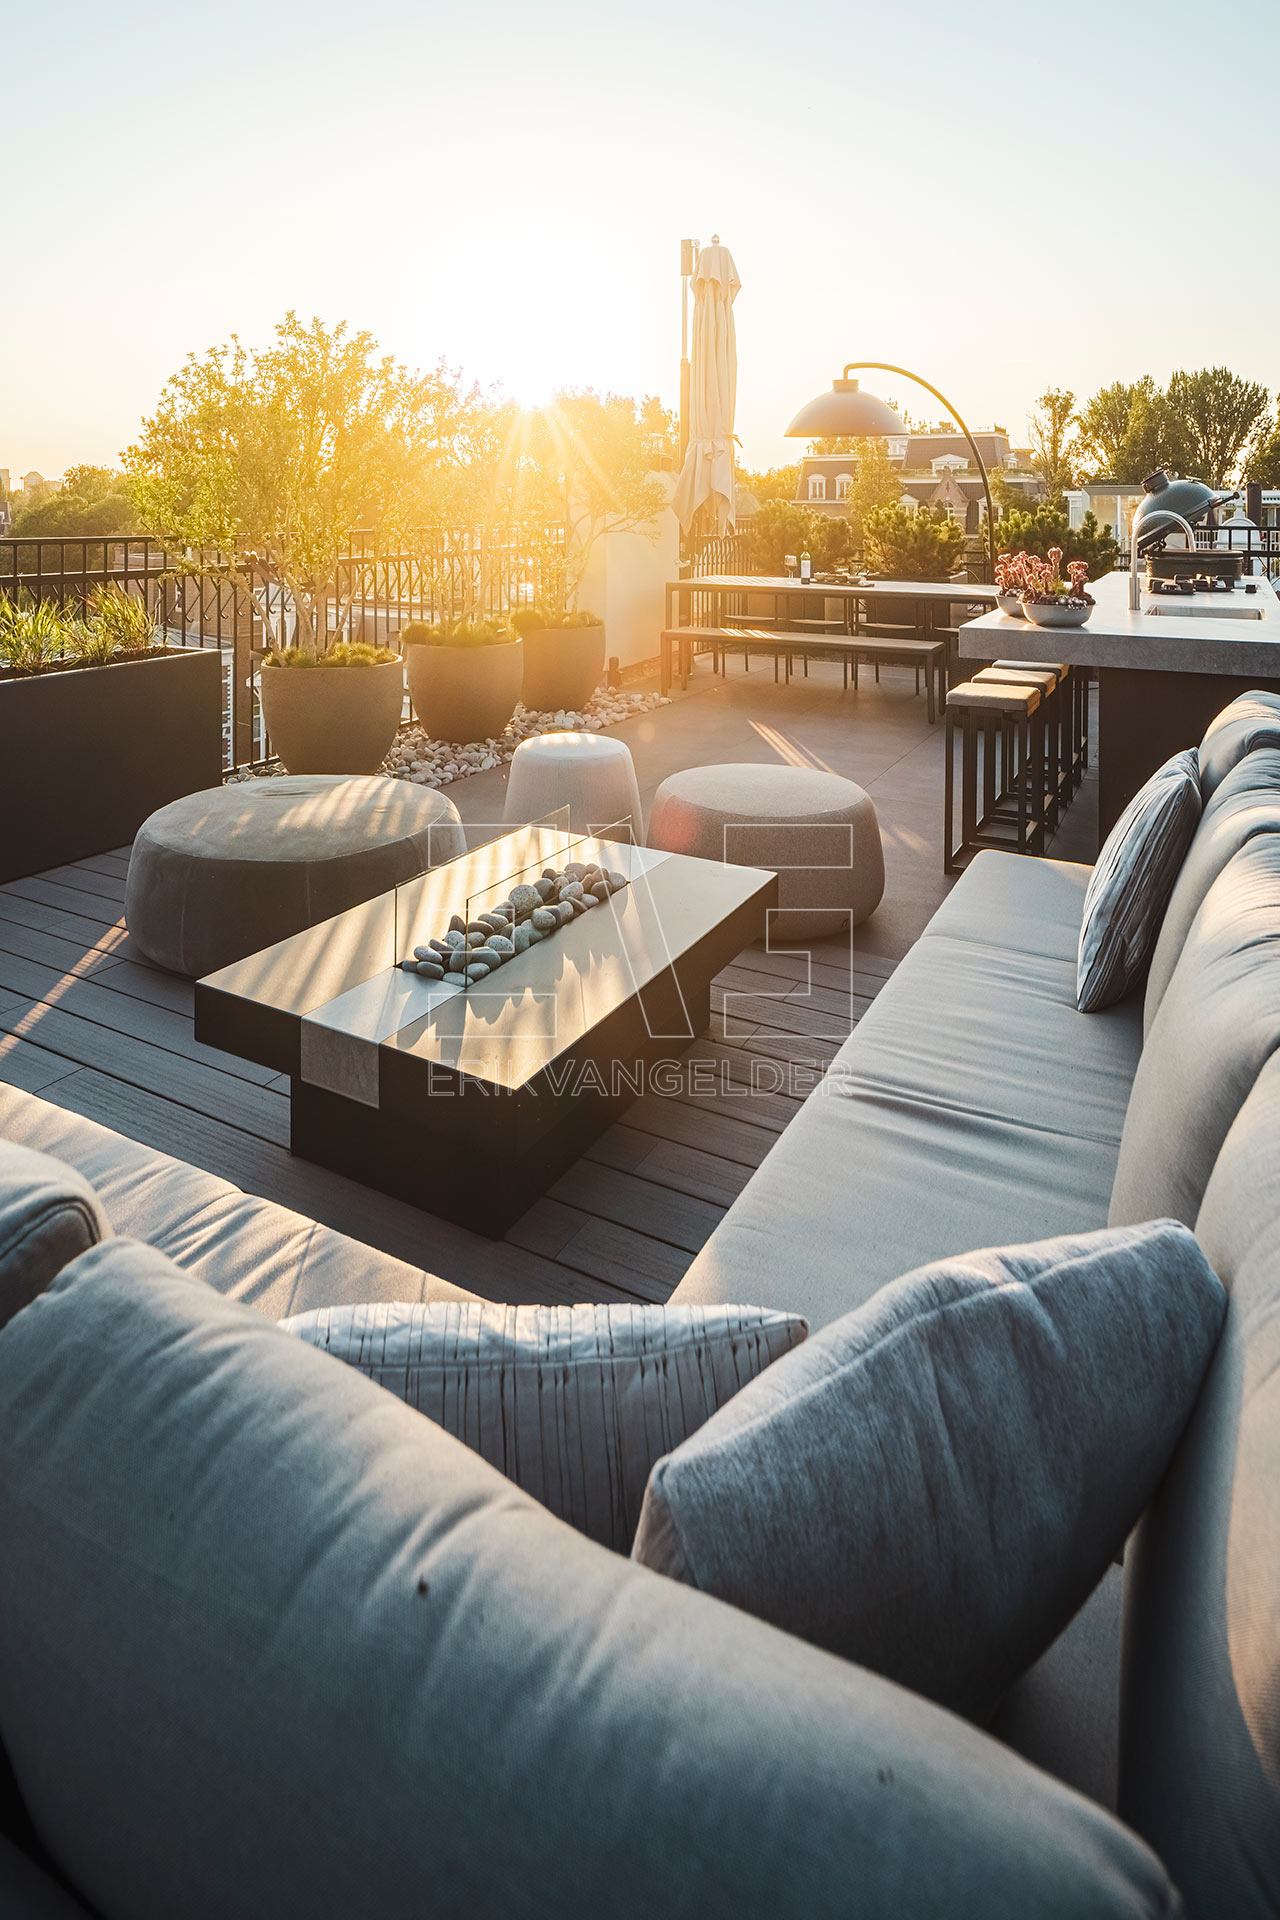 Modern zonnig dakterras lounge vuurtafel poef bar buitenkeuken bbq luxe elementen erikvangelder tuinarchitect tuindesign exclusive gardens luxury